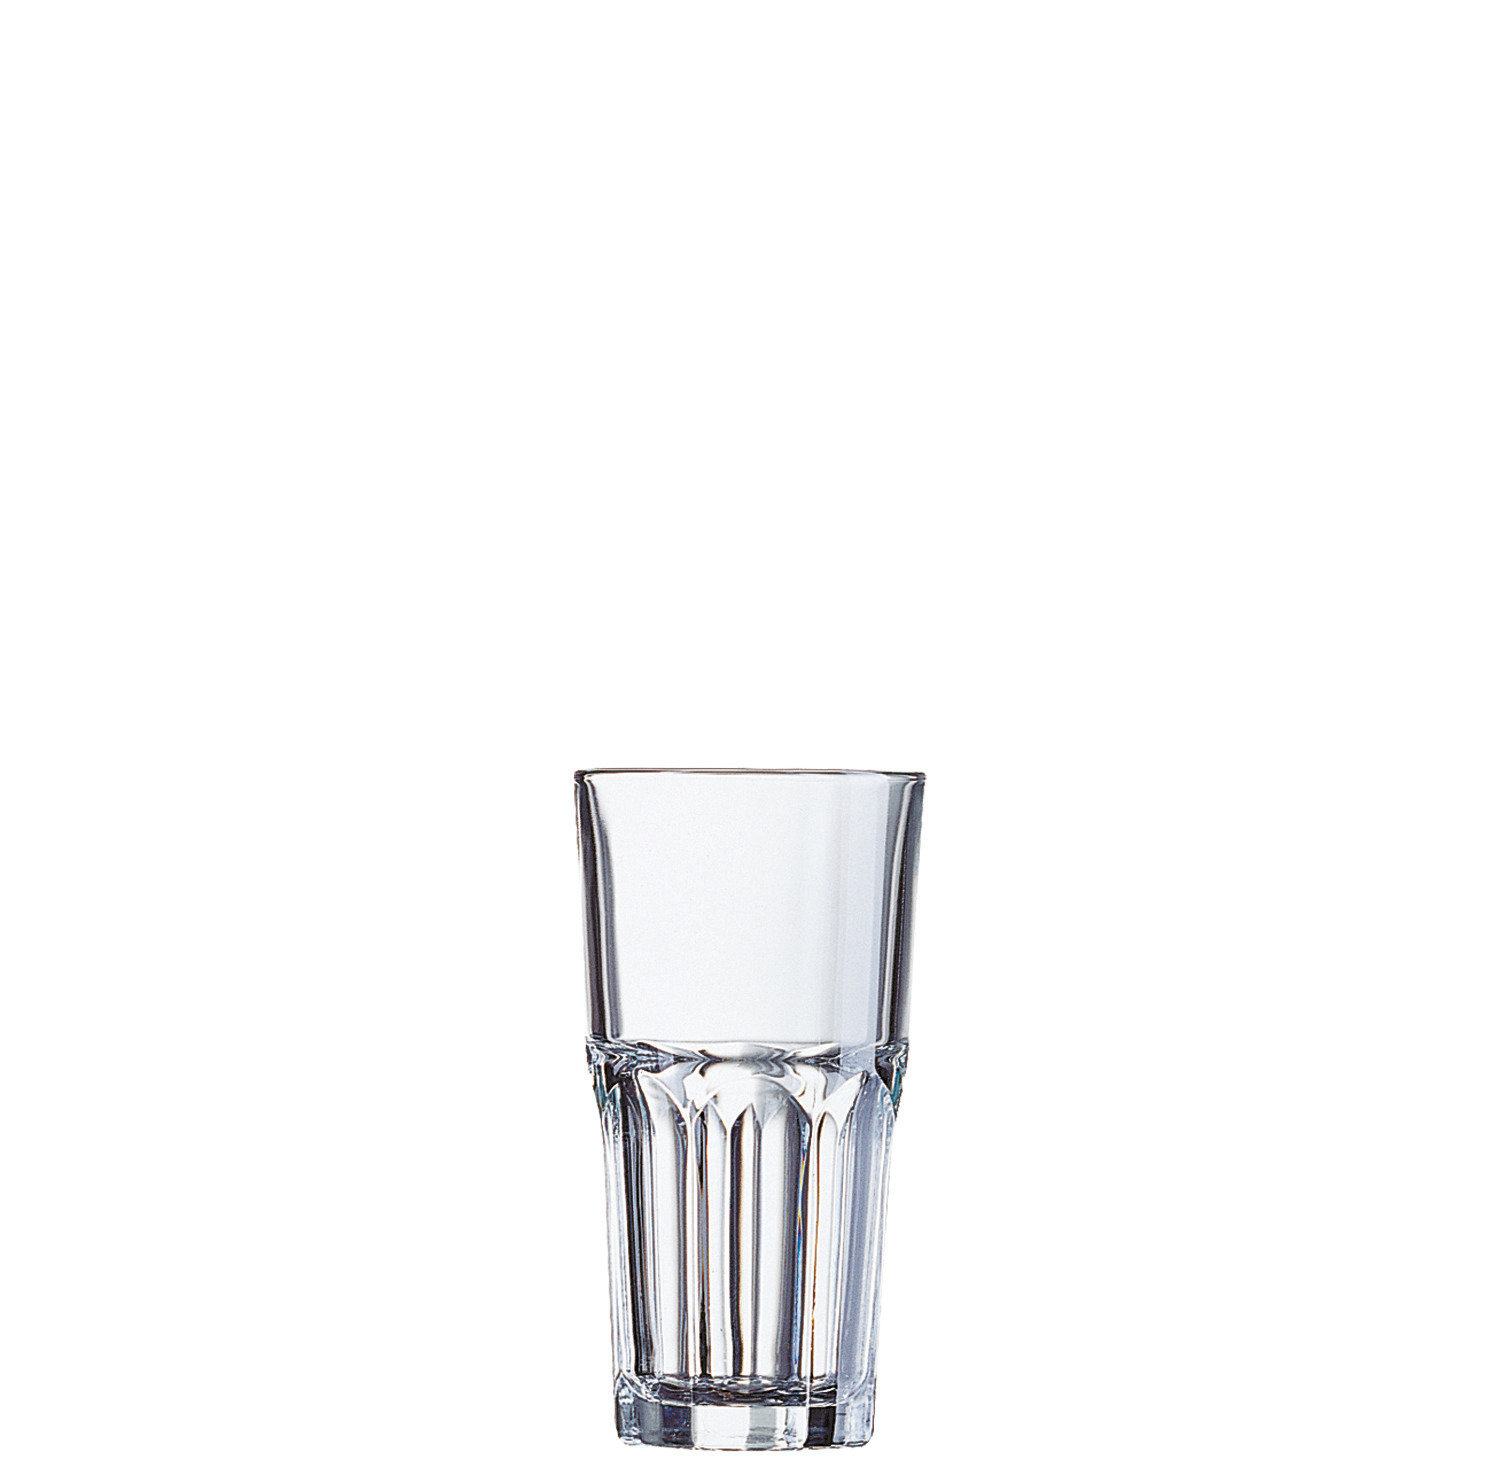 Longdrinkglas "FH31" stapelbar 74 mm / 0,31 l transparent